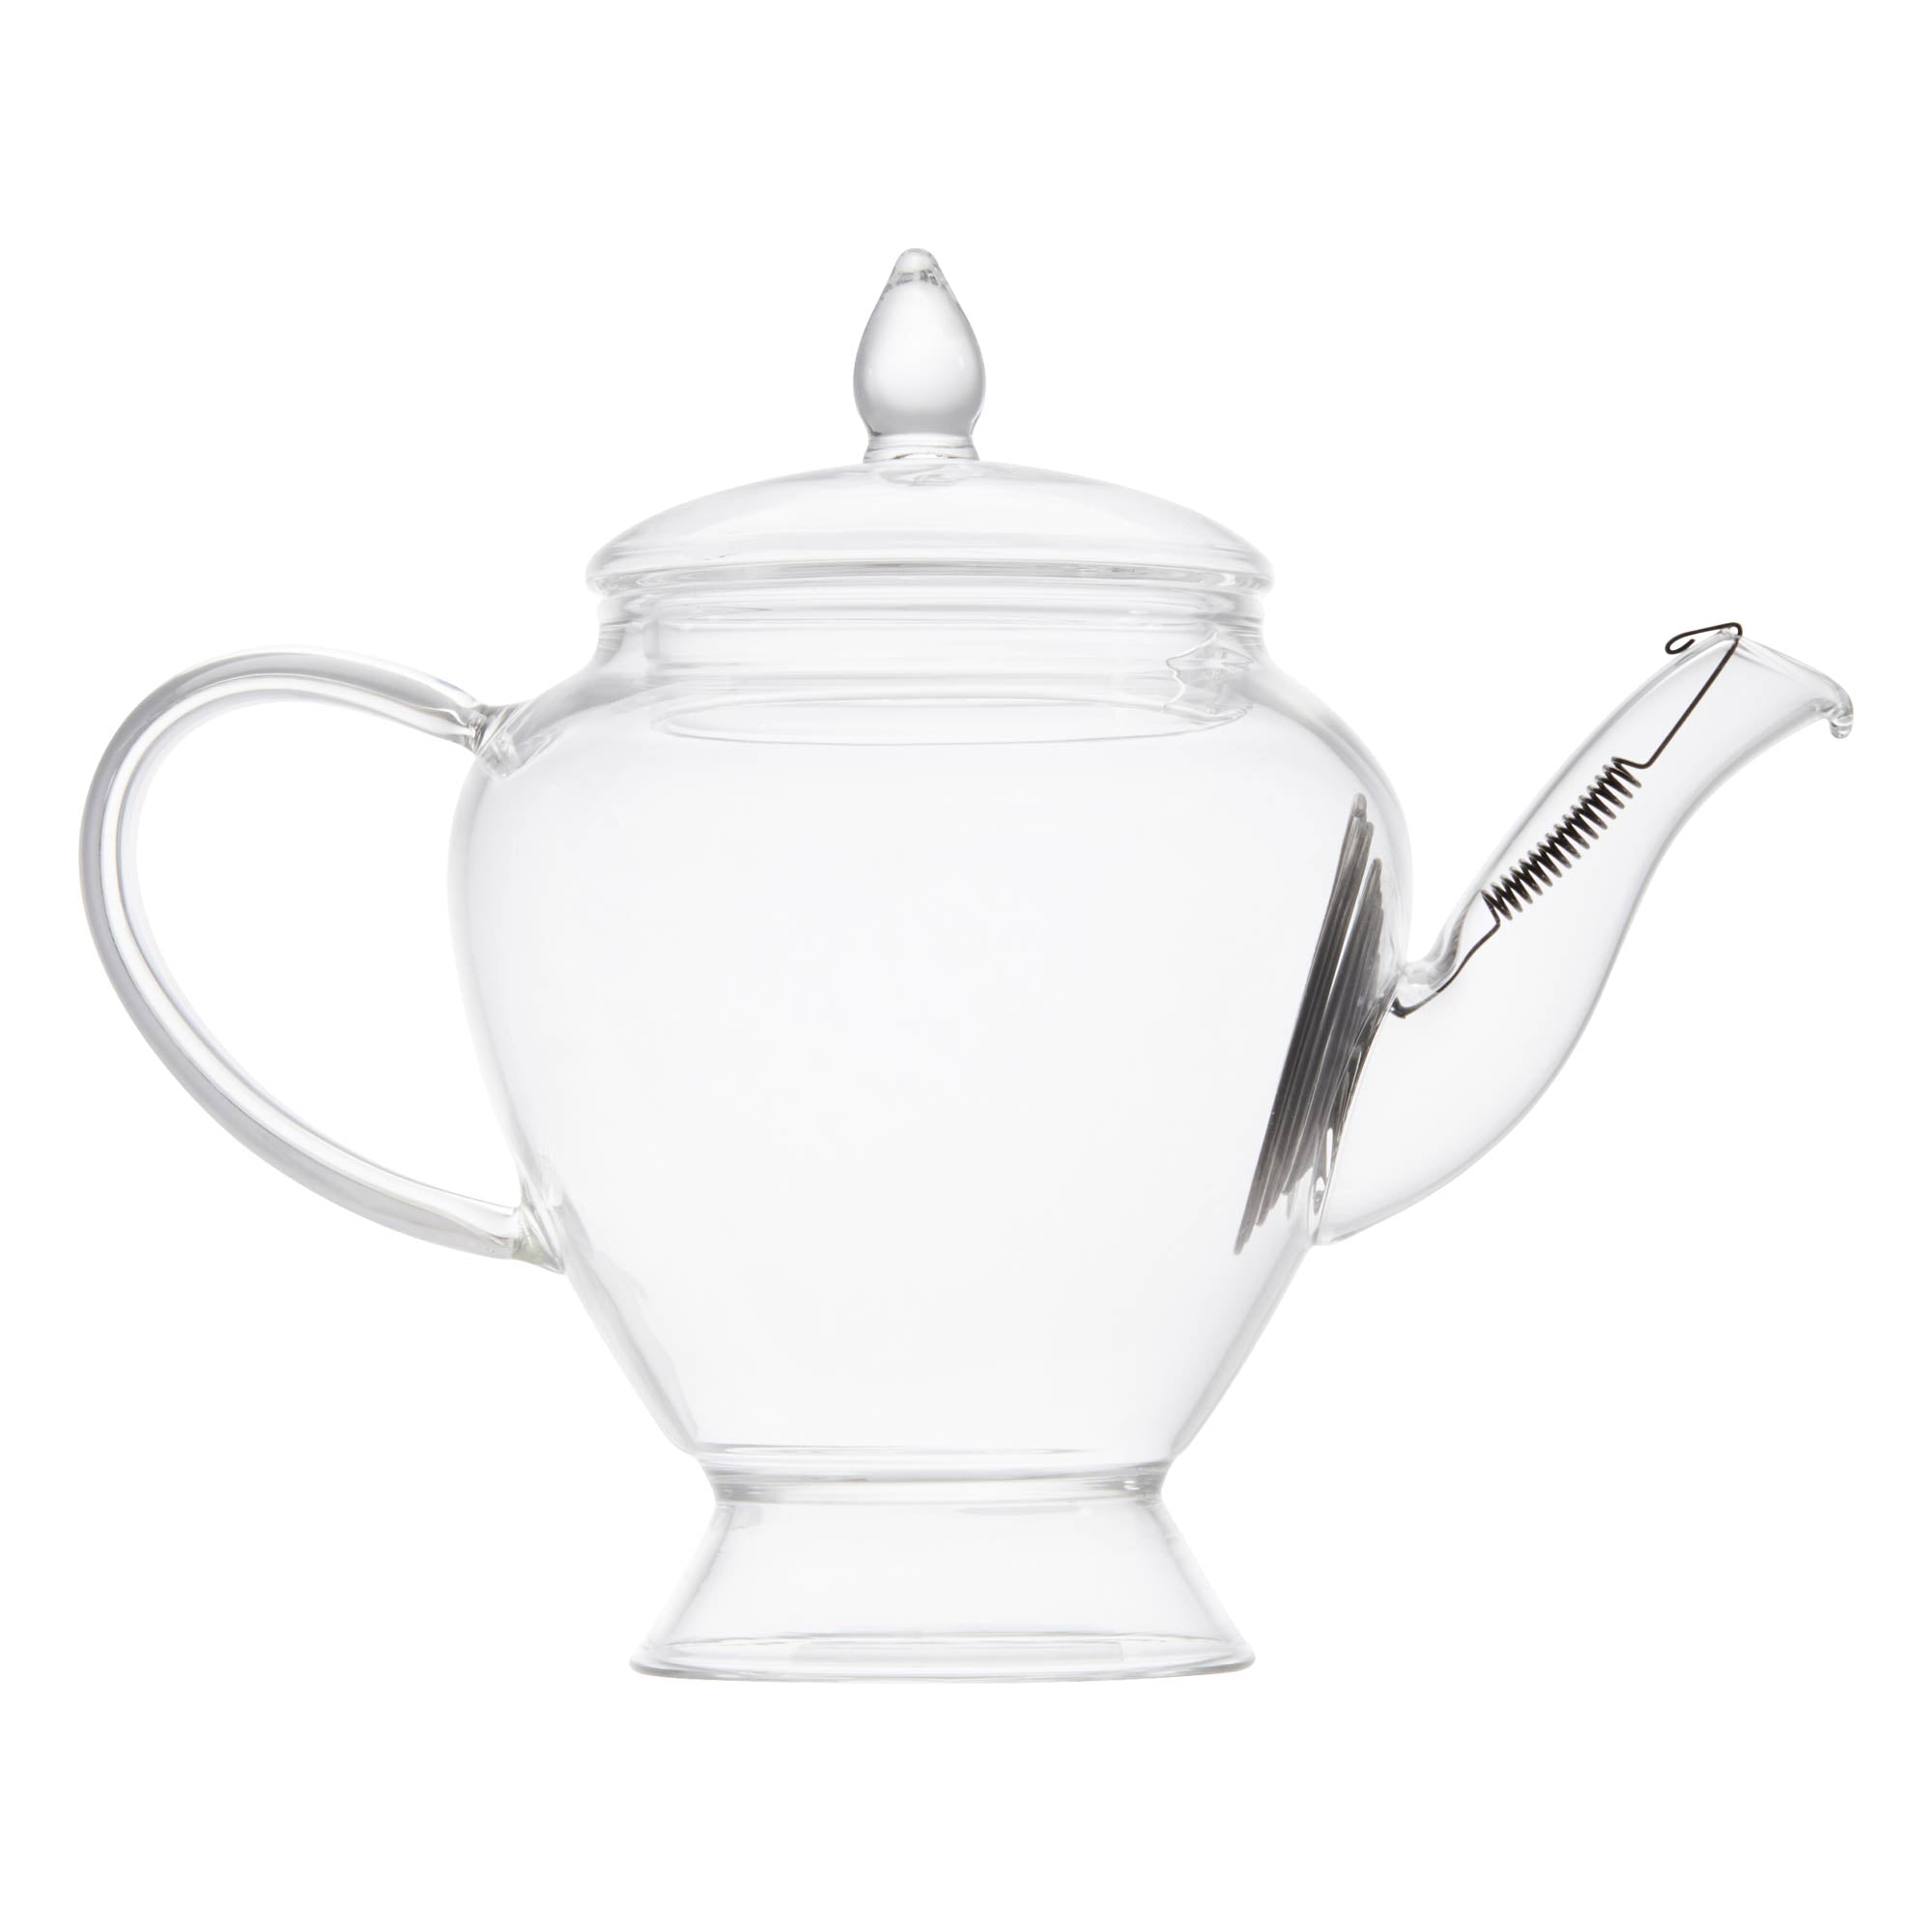 Rare Tea Glass Teapot - 150ml